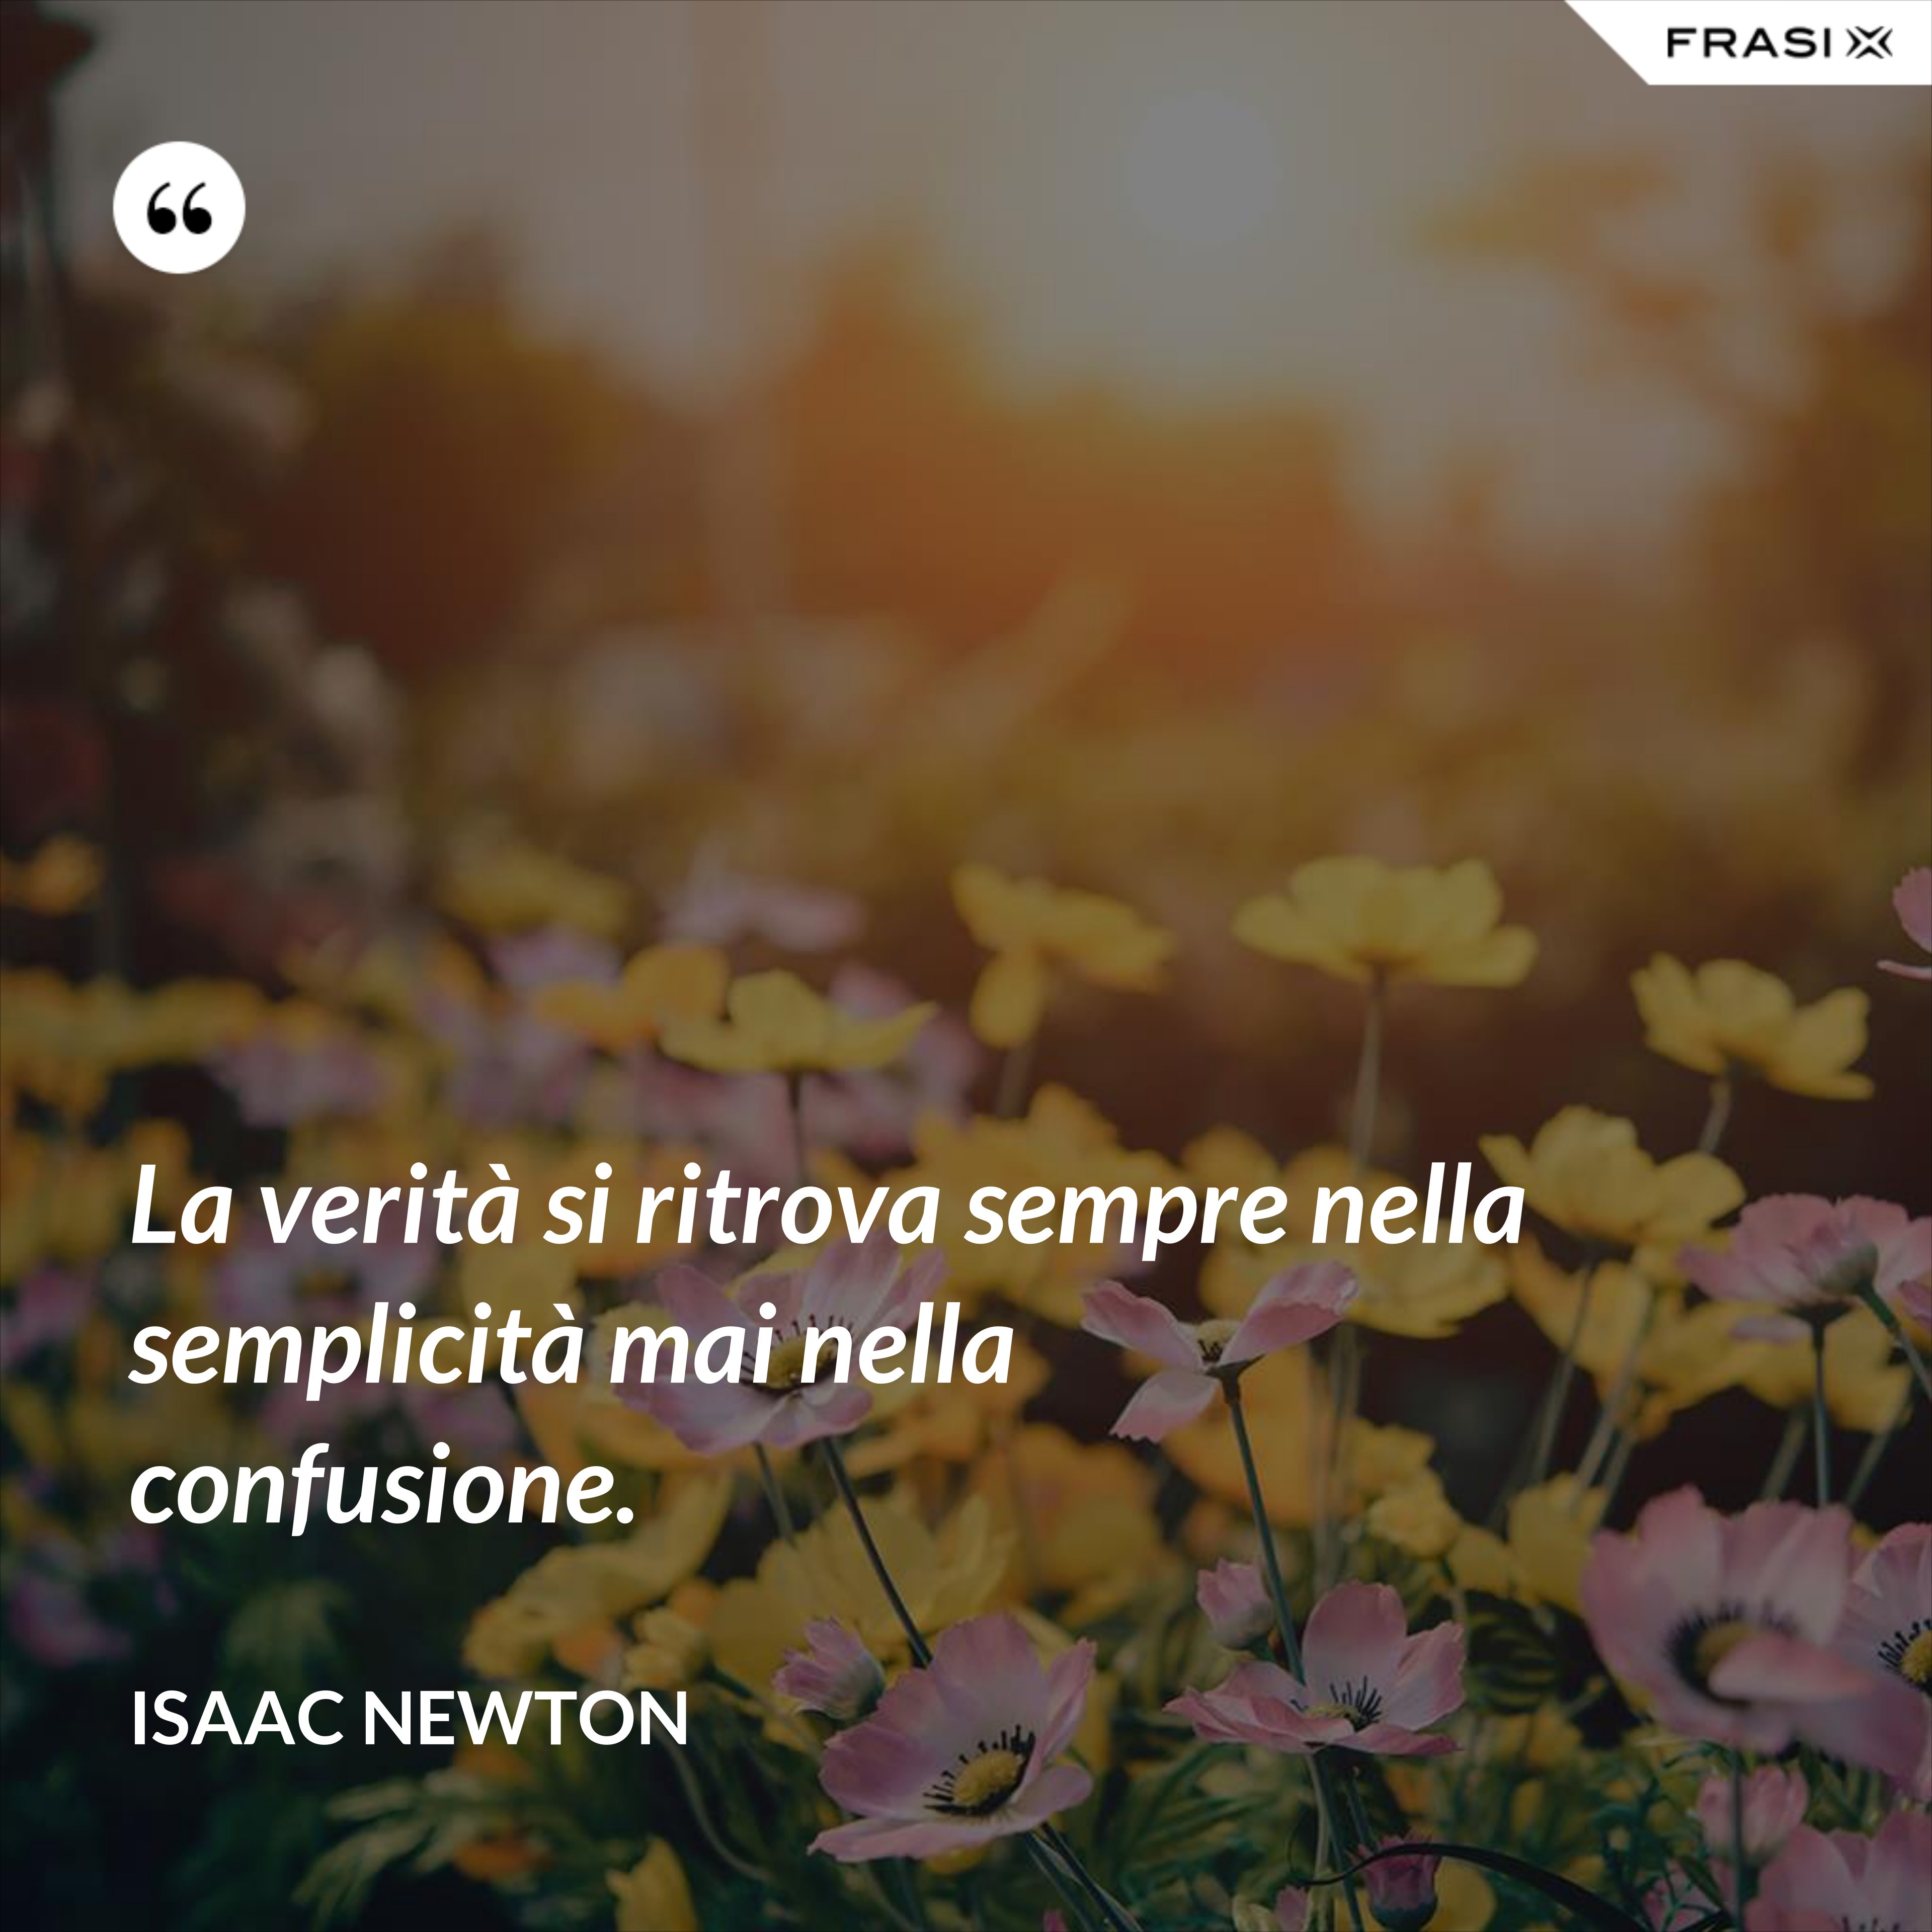 La verità si ritrova sempre nella semplicità mai nella confusione. - Isaac Newton